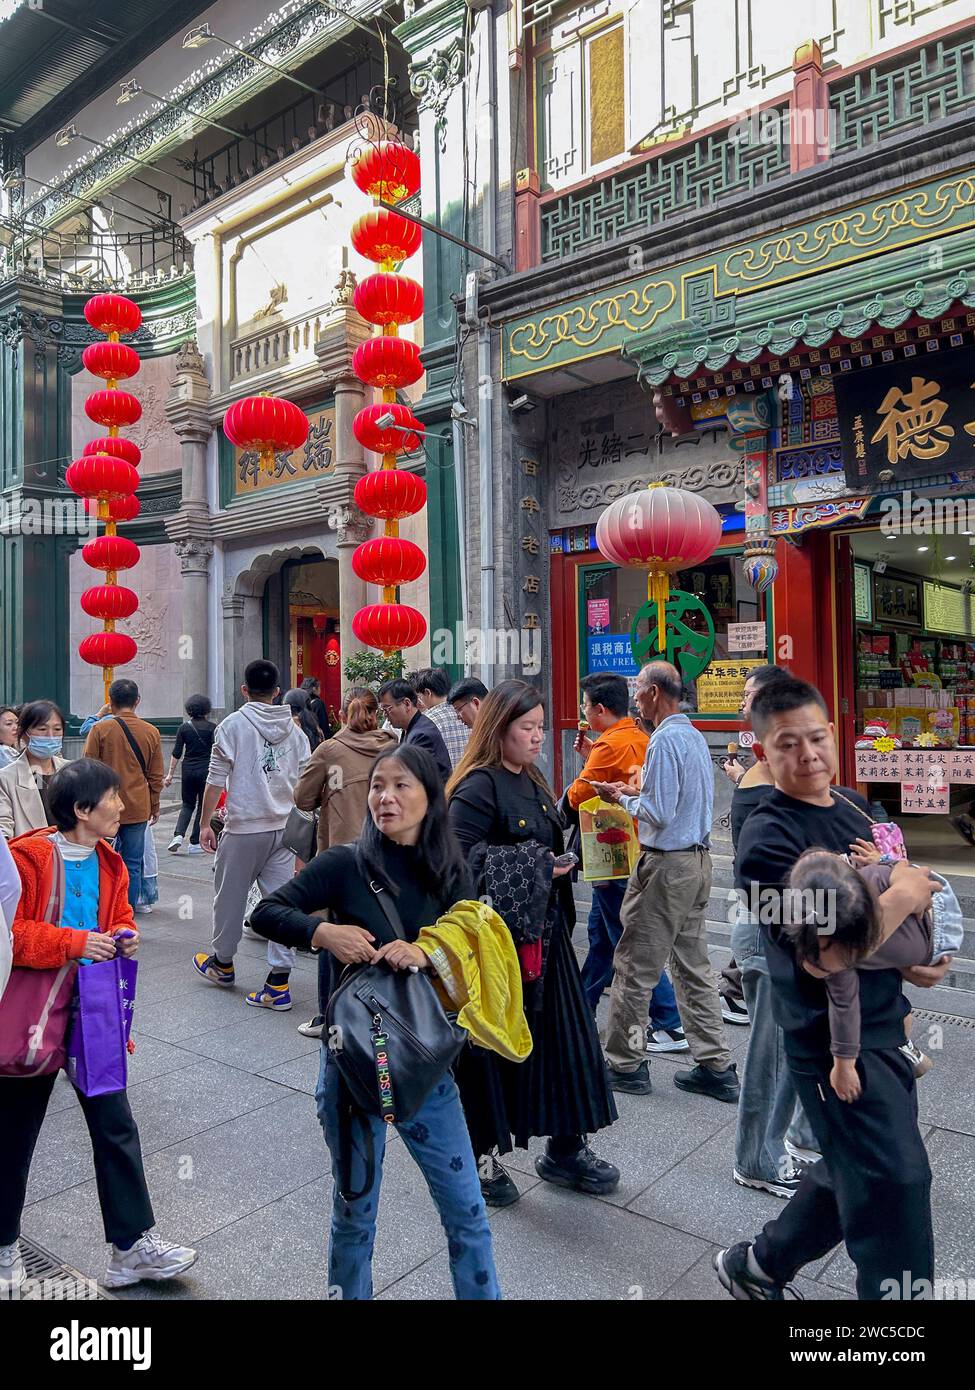 Pechino, Cina, gente numerosa, turisti cinesi in visita nel quartiere tradizionale, quartiere Qianmen, donne cinesi che camminano per strada trafficata Foto Stock